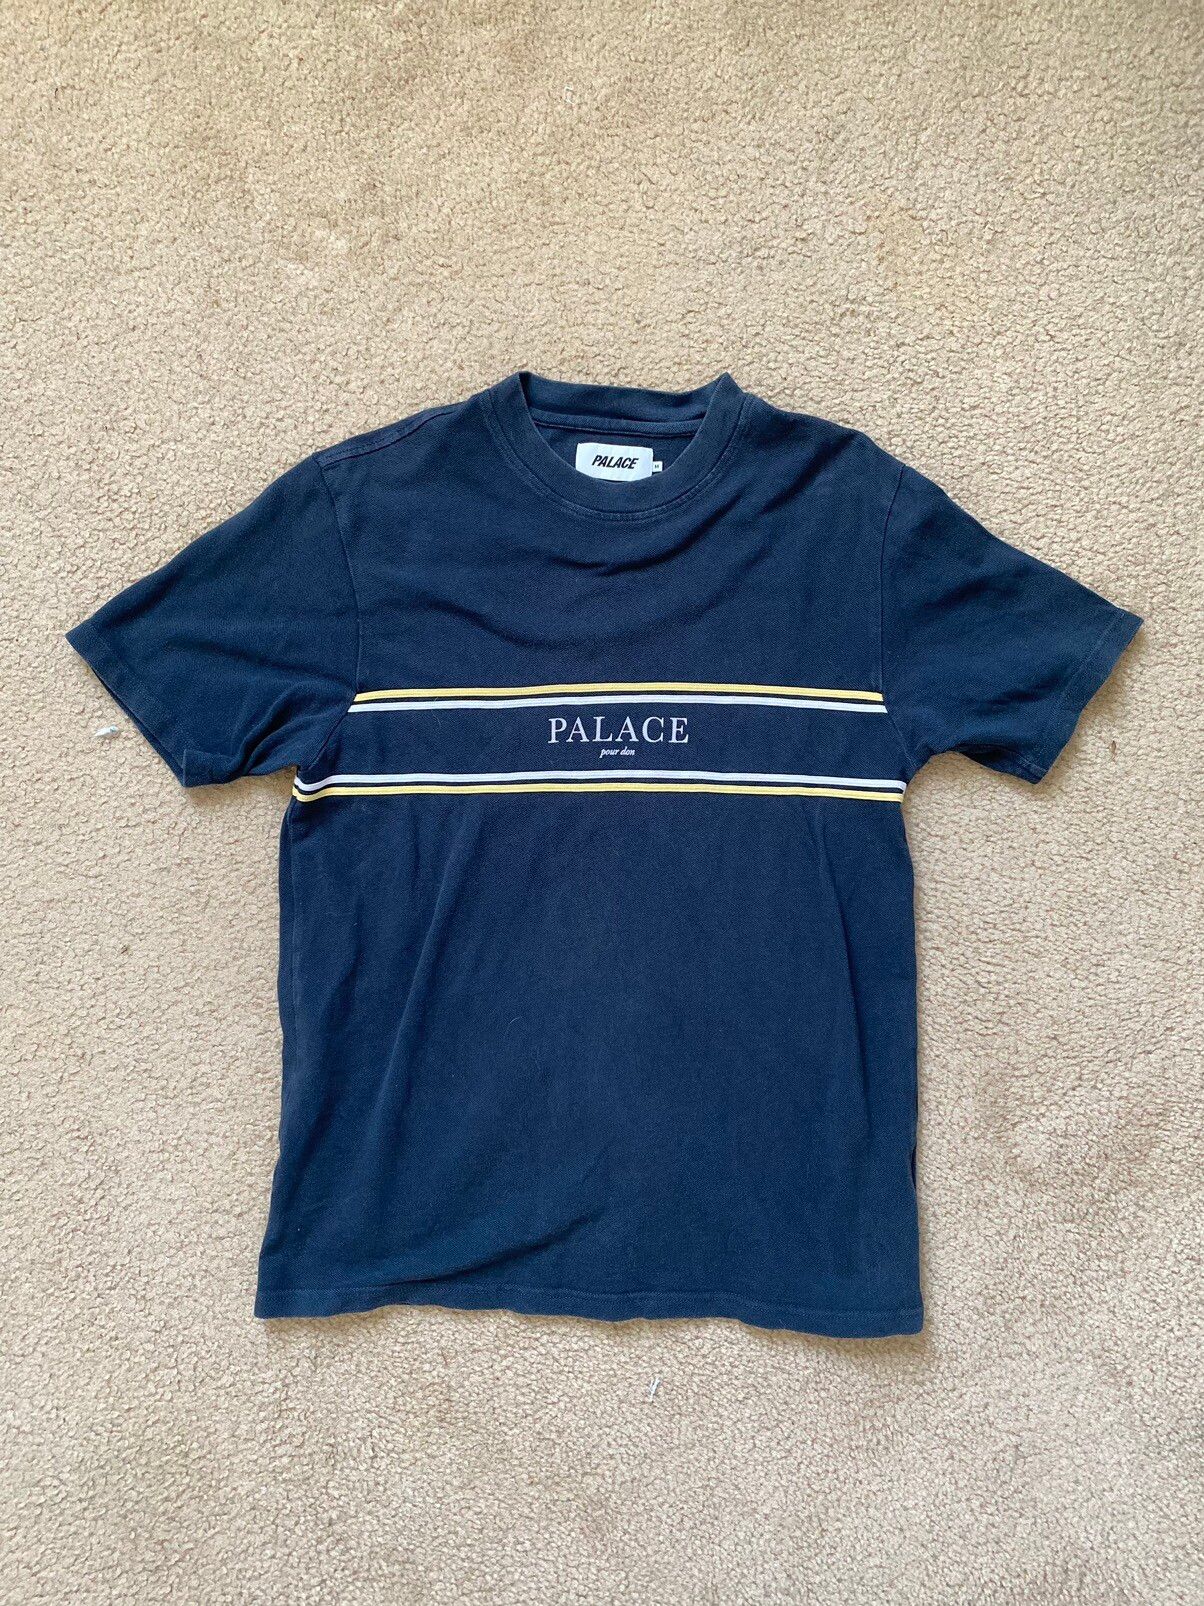 Palace Palace Pour Don T-Shirt Size US M / EU 48-50 / 2 - 1 Preview